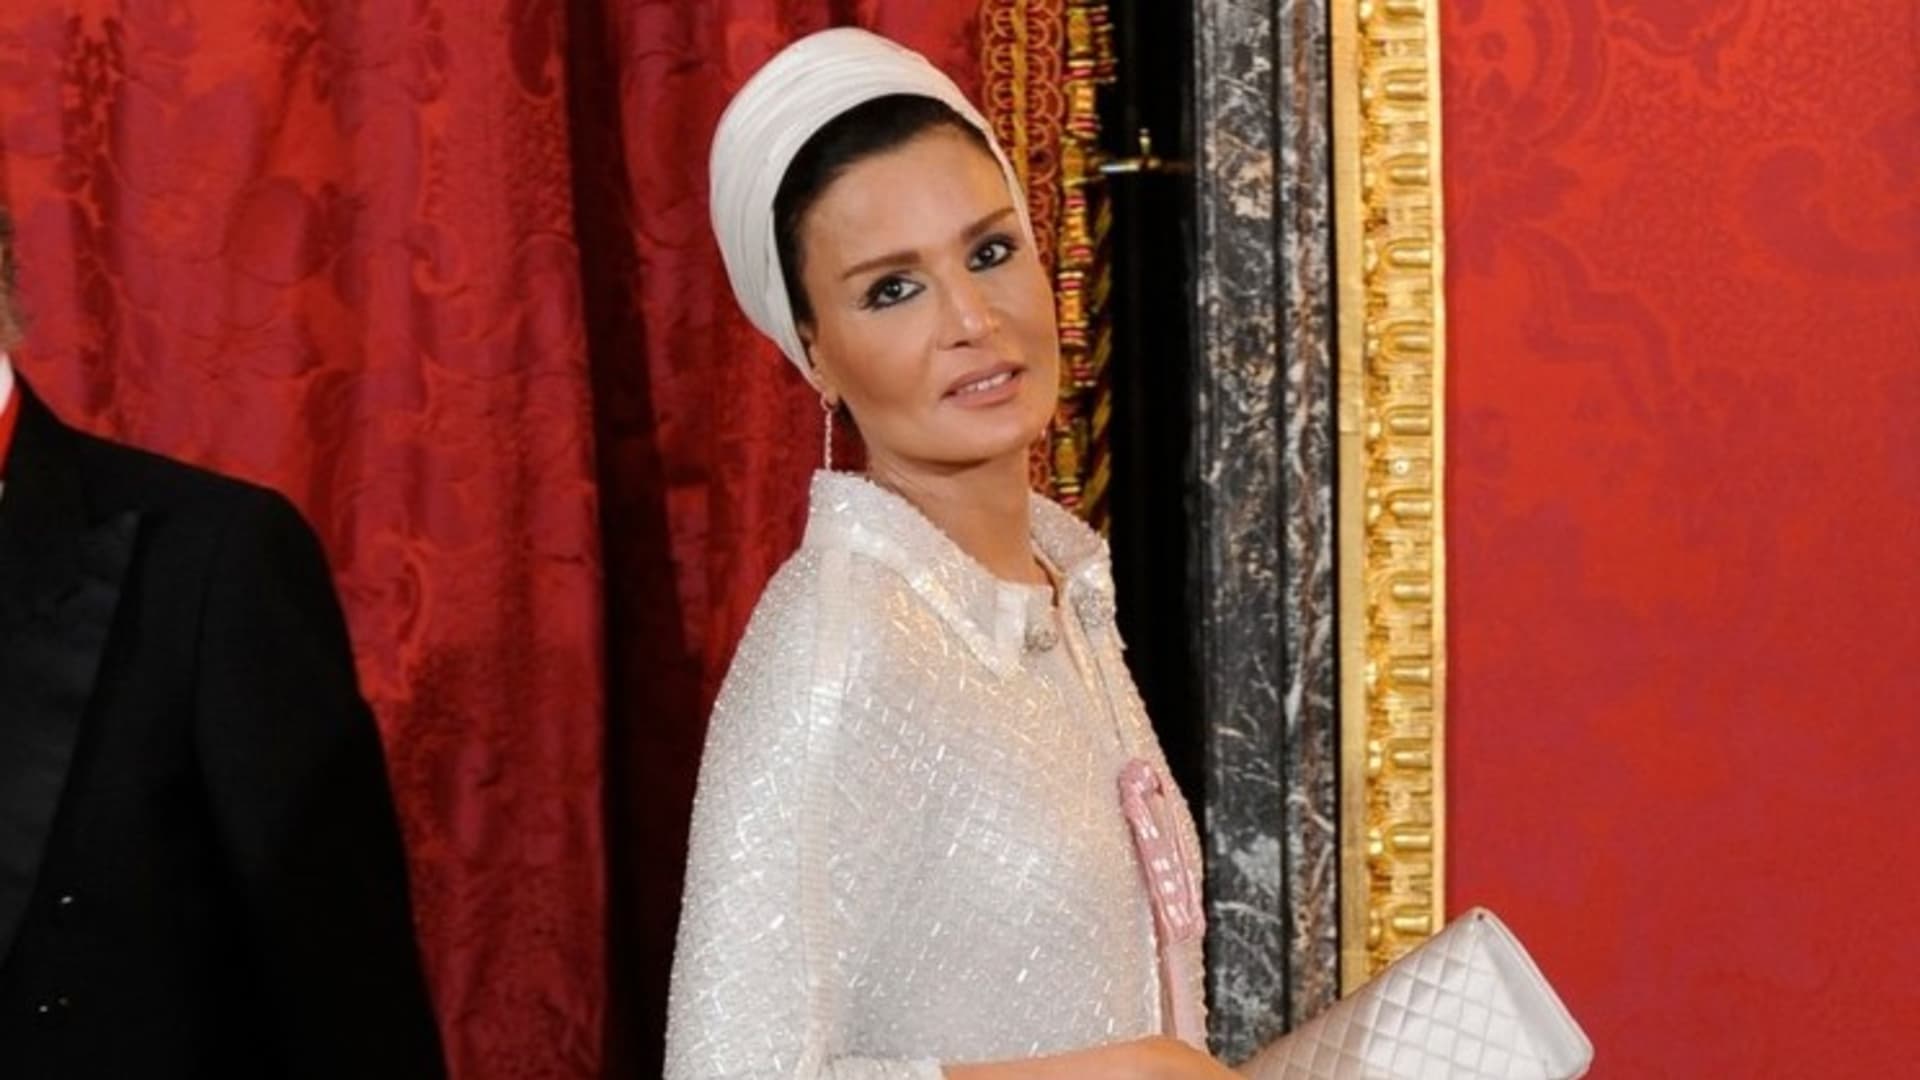 Princezna Kate má velkou konkurenci v podobě elegantní Sheiky Mozy bint Nasser.